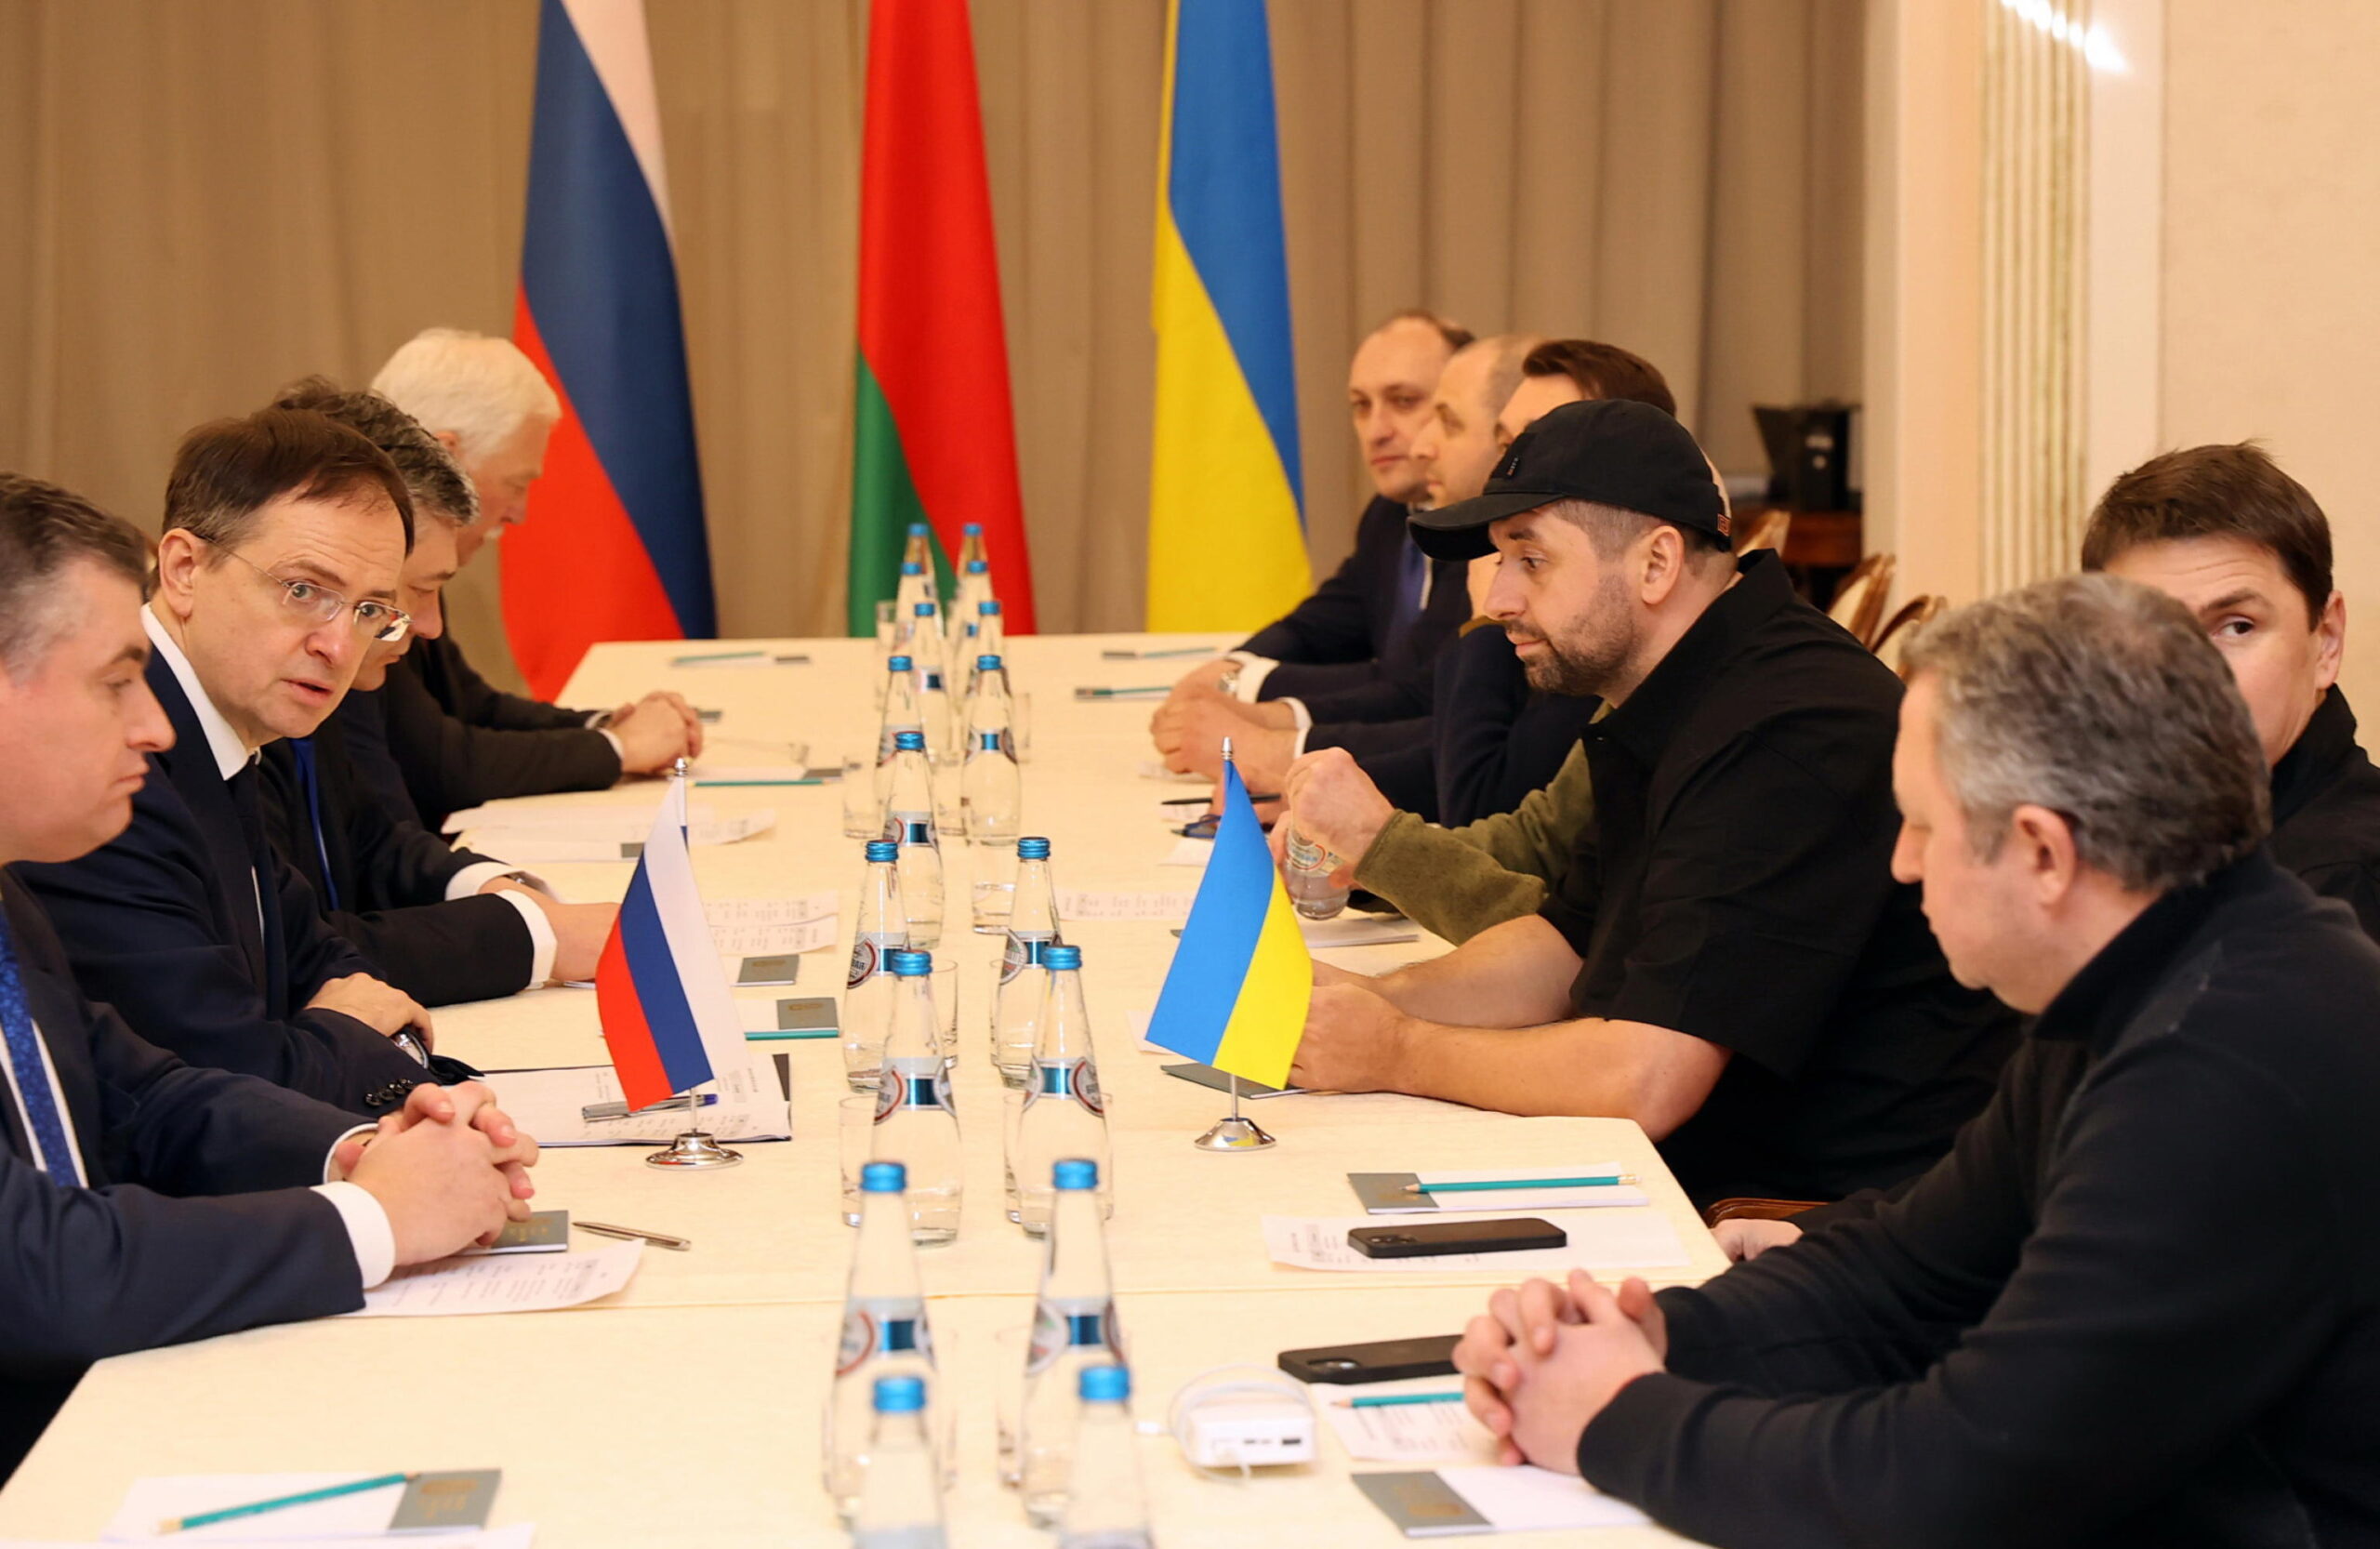 Previsto un terzo round per i negoziati tra Russia e Ucraina